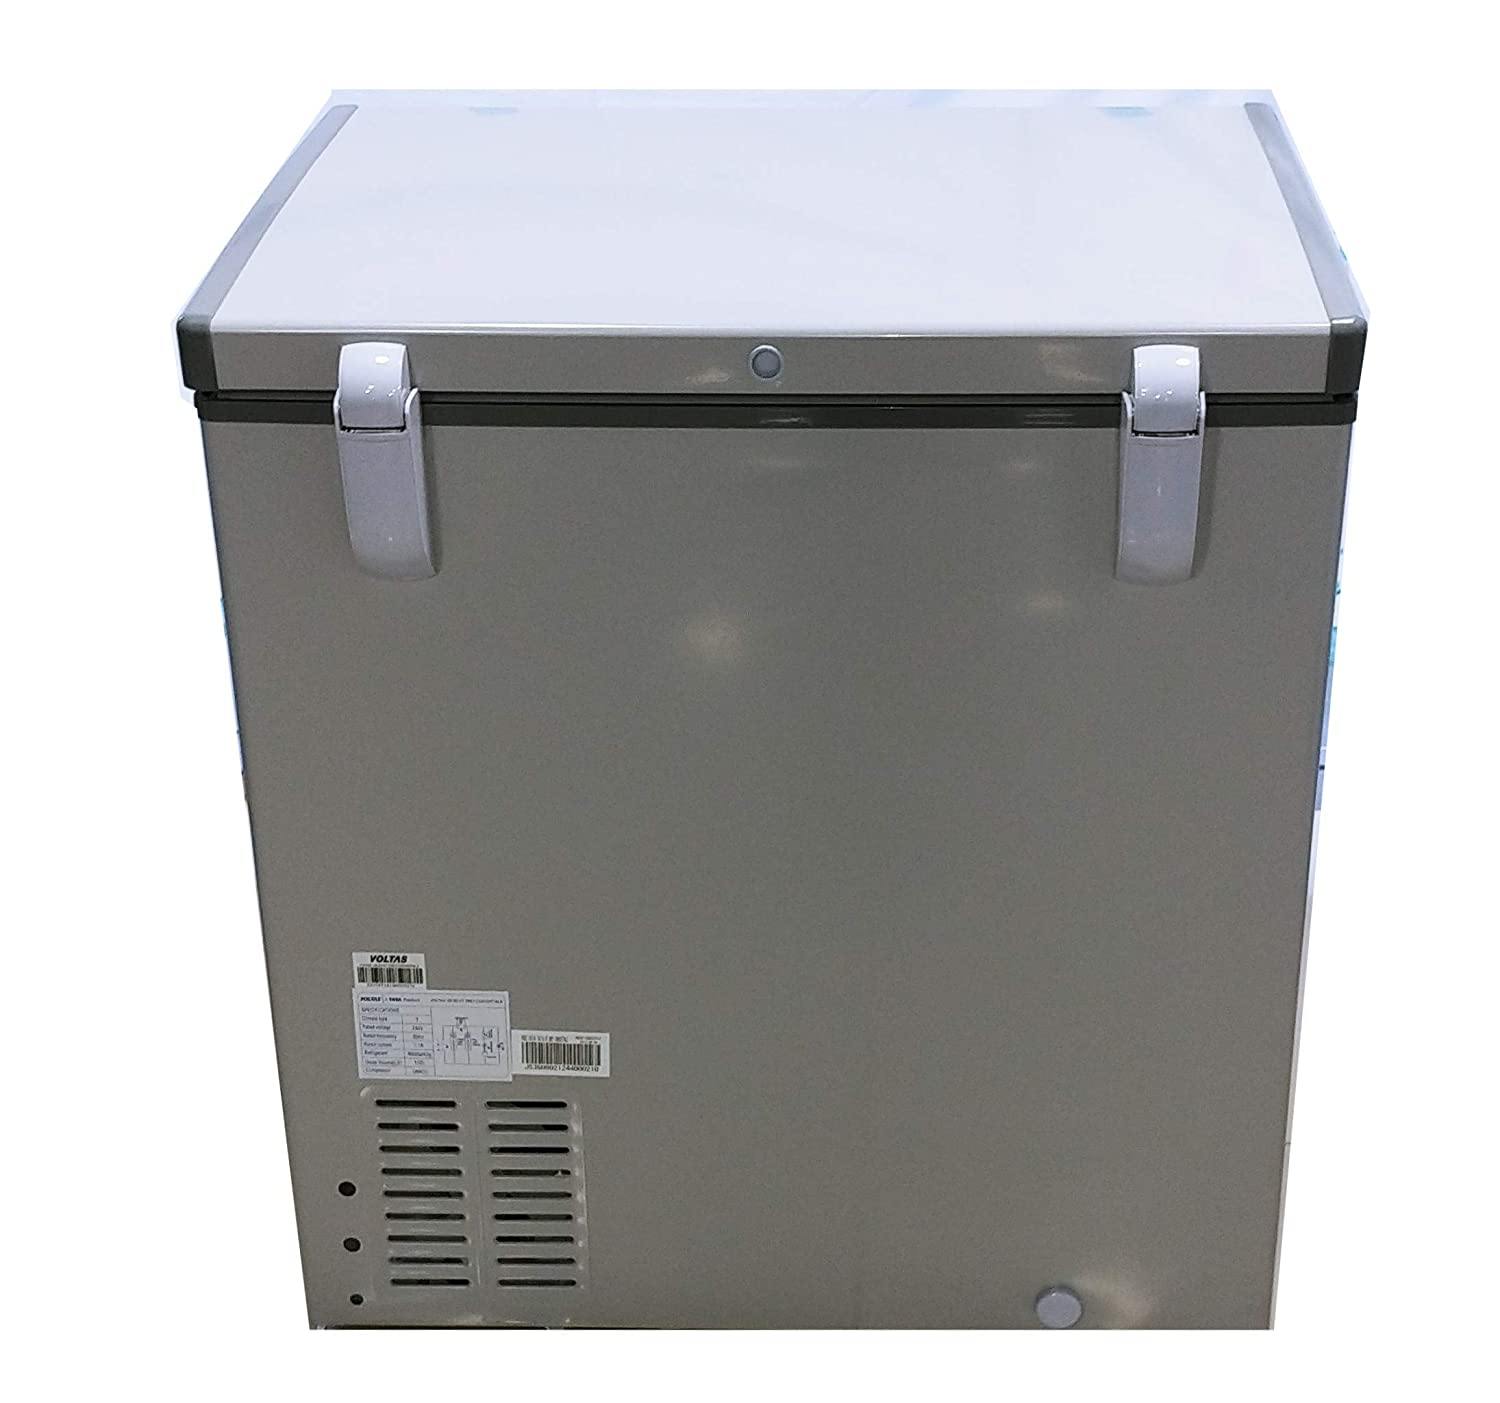 Voltas 150 SD HT Grey Single Door Deep Freezer, 150 Liters, Grey - Mahajan Electronics Online